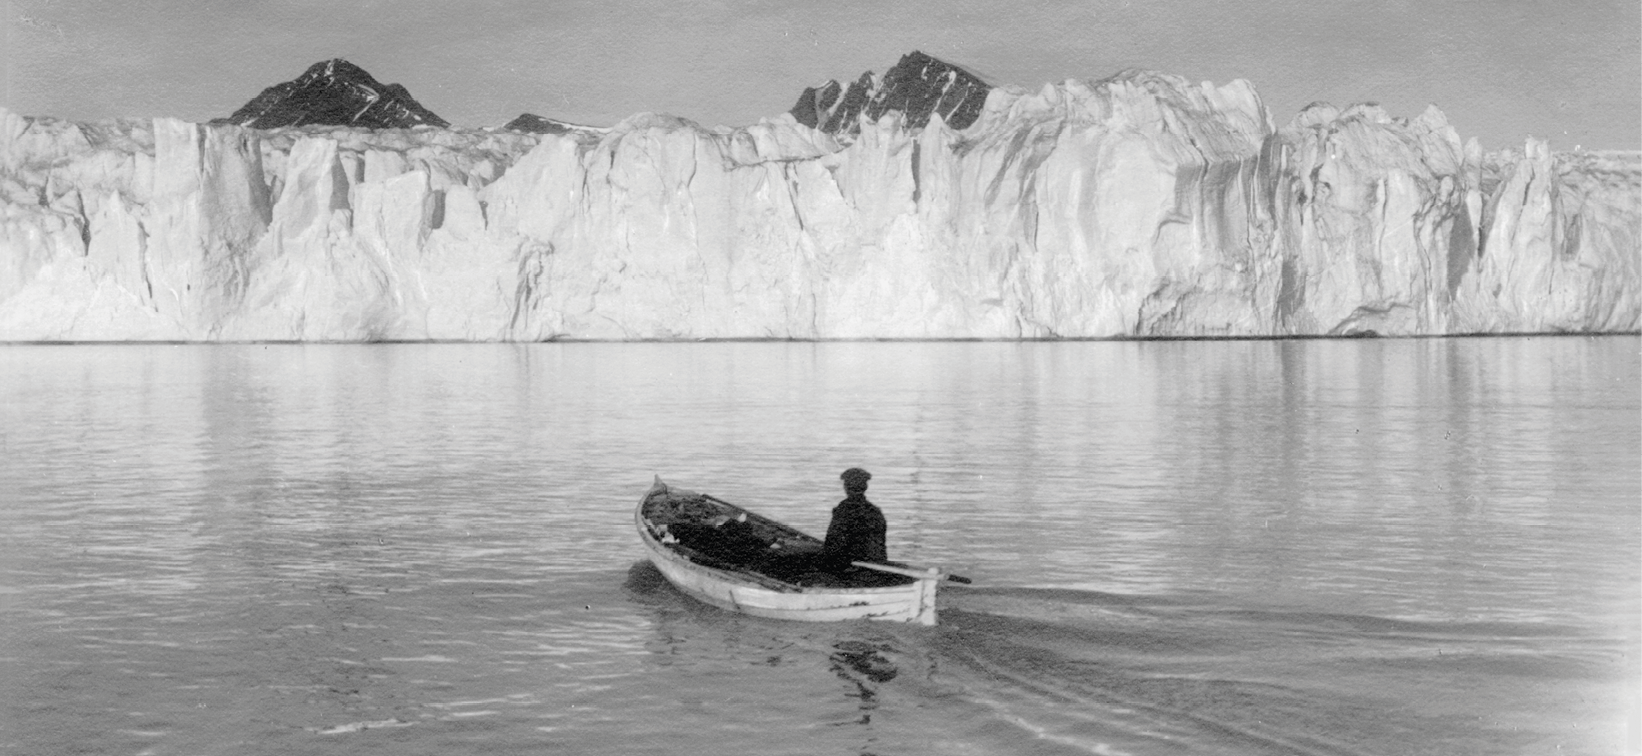 Fotografia. Em preto e branco. Uma pessoa está dentro de uma canoa em  águas calmas, navegando  em direção a uma geleira branca e alta, ao fundo. Atrás da geleira, topos de montes.